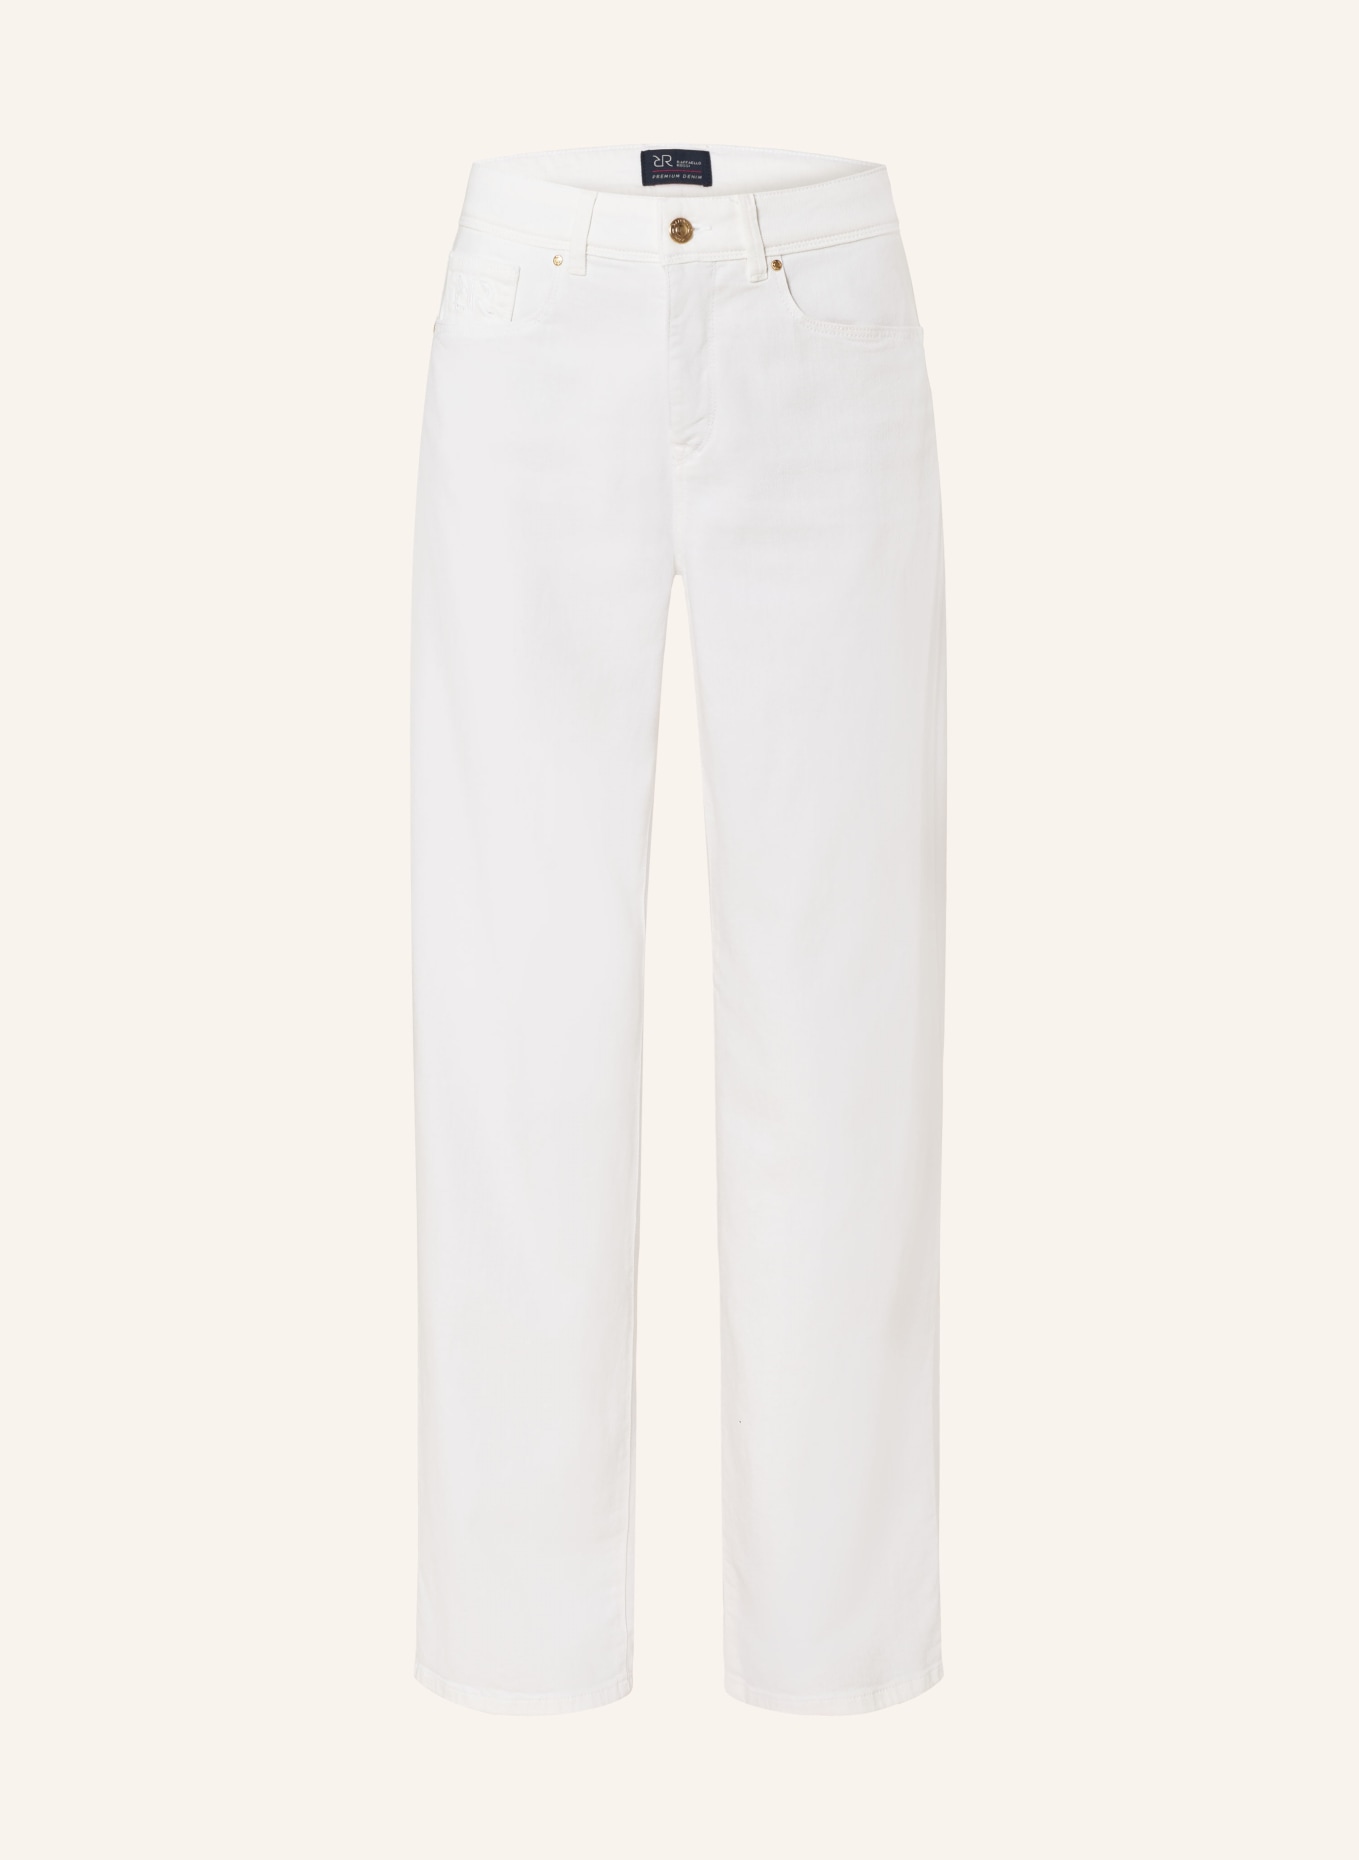 RAFFAELLO ROSSI Straight jeans KIRA, Color: ECRU (Image 1)